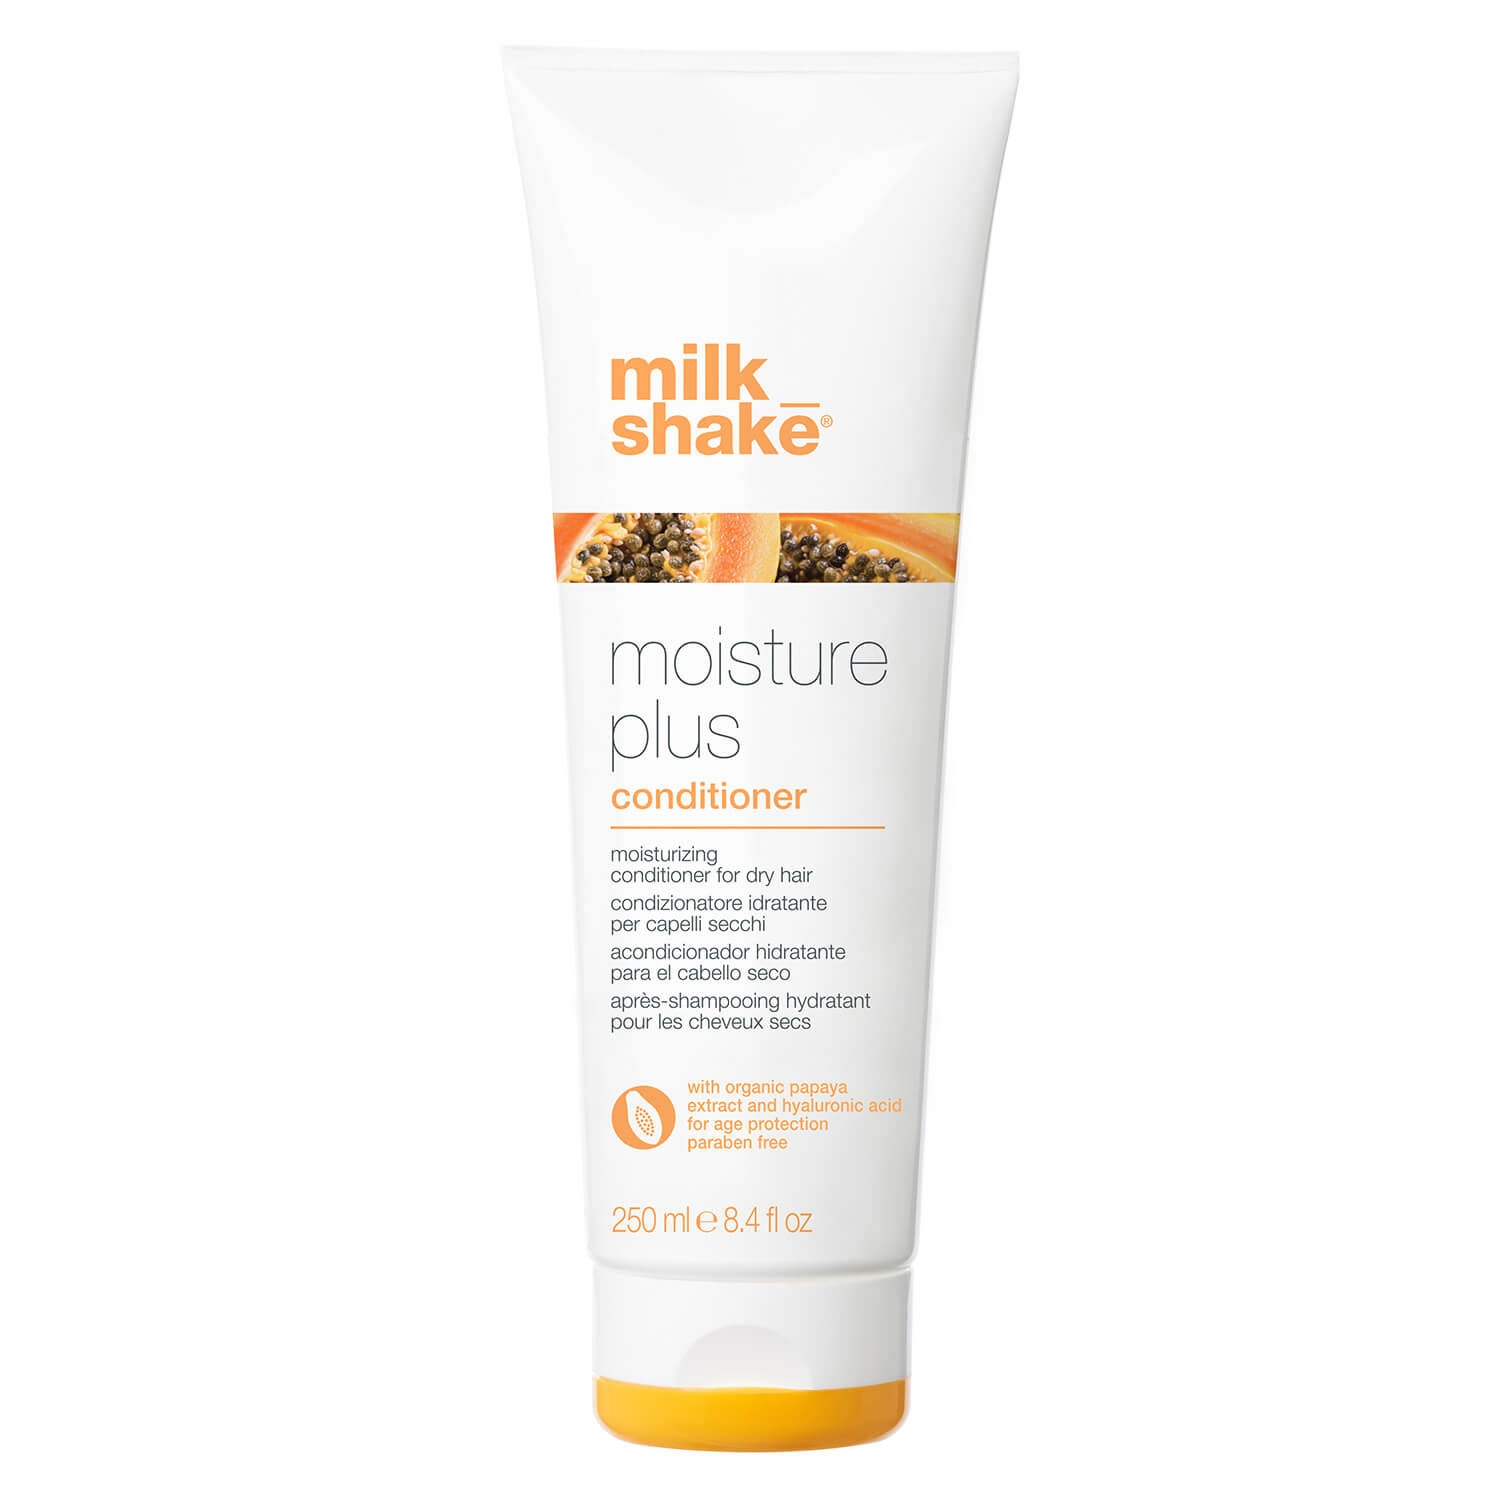 Produktbild von milk_shake moisture plus - conditioner